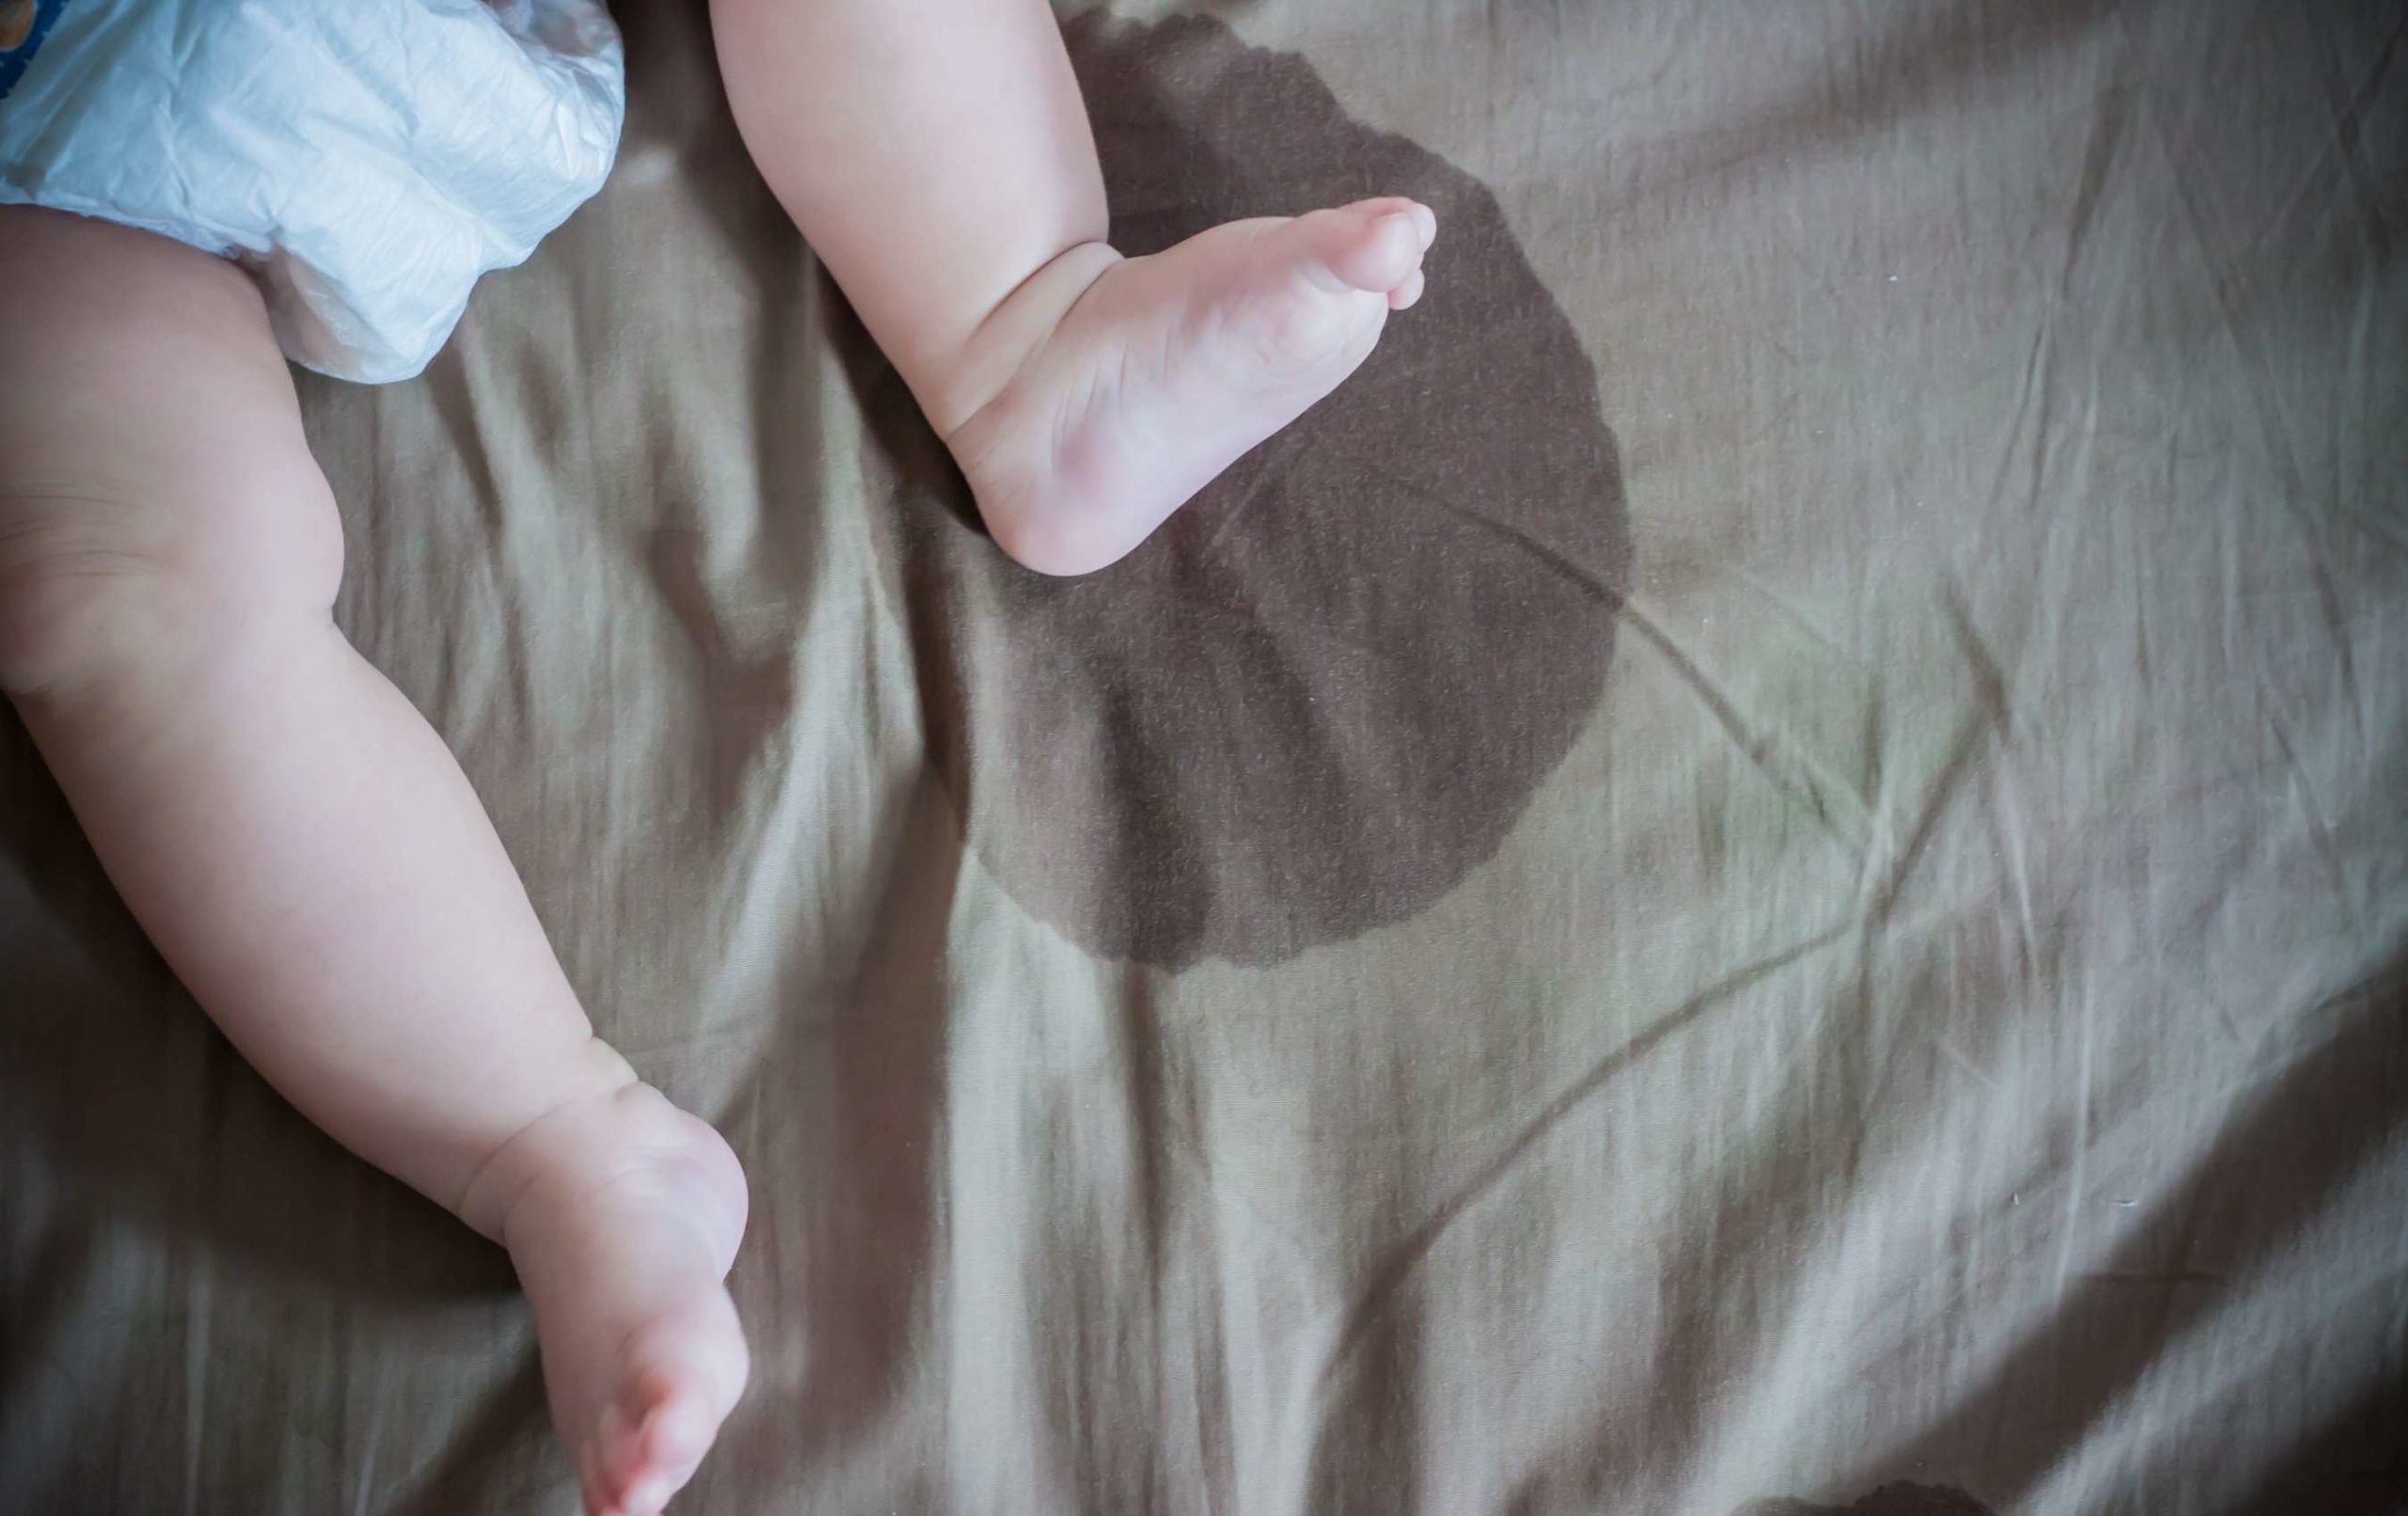 Votre enfant fait pipi au lit, que faire ? Les conseils d'une pédiatre